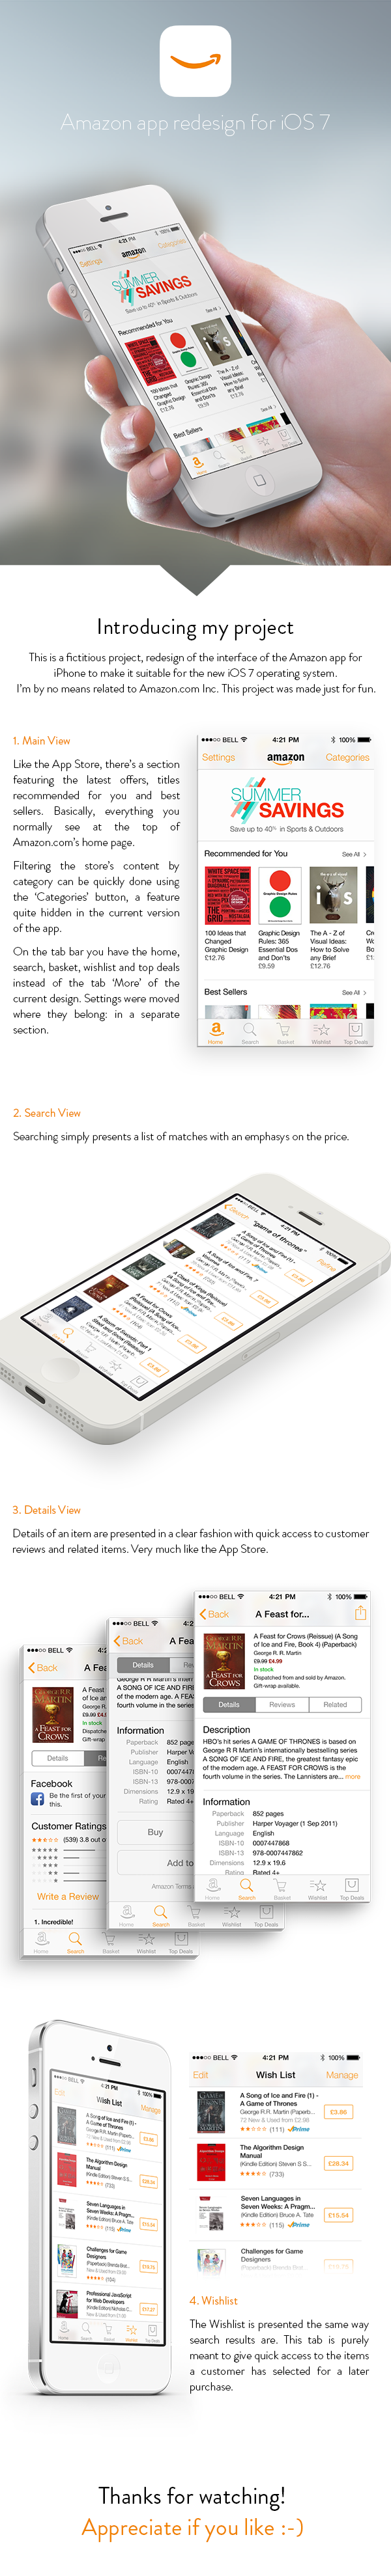  redesign app ios7 Amazon ux UI iphone